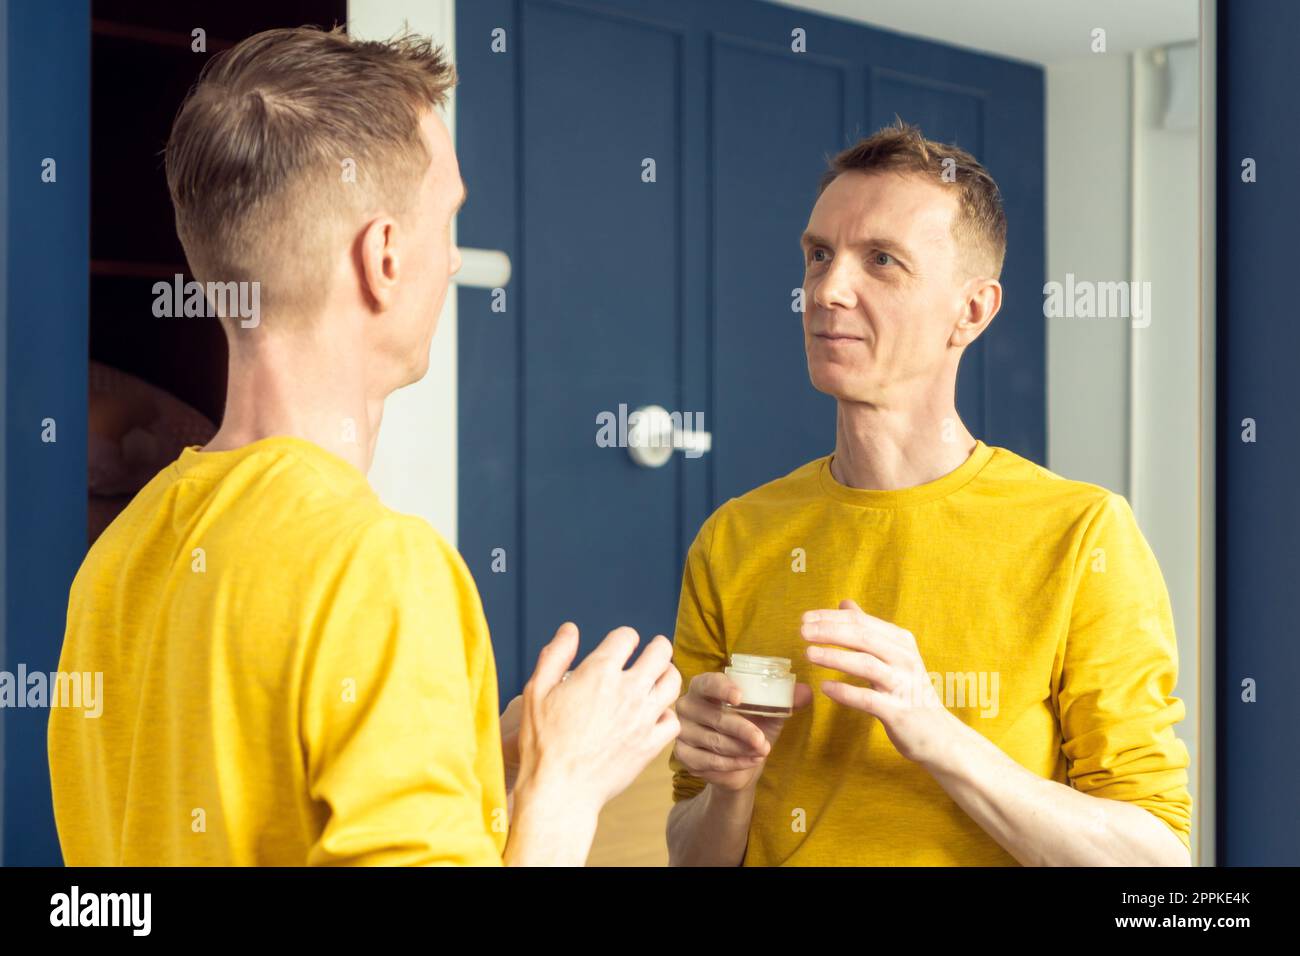 El hombre maduro feliz sostiene el tarro de crema hidratante y aplica sobre la piel clara de la cara. Retrato masculino en el espejo de la habitación. Foto de stock